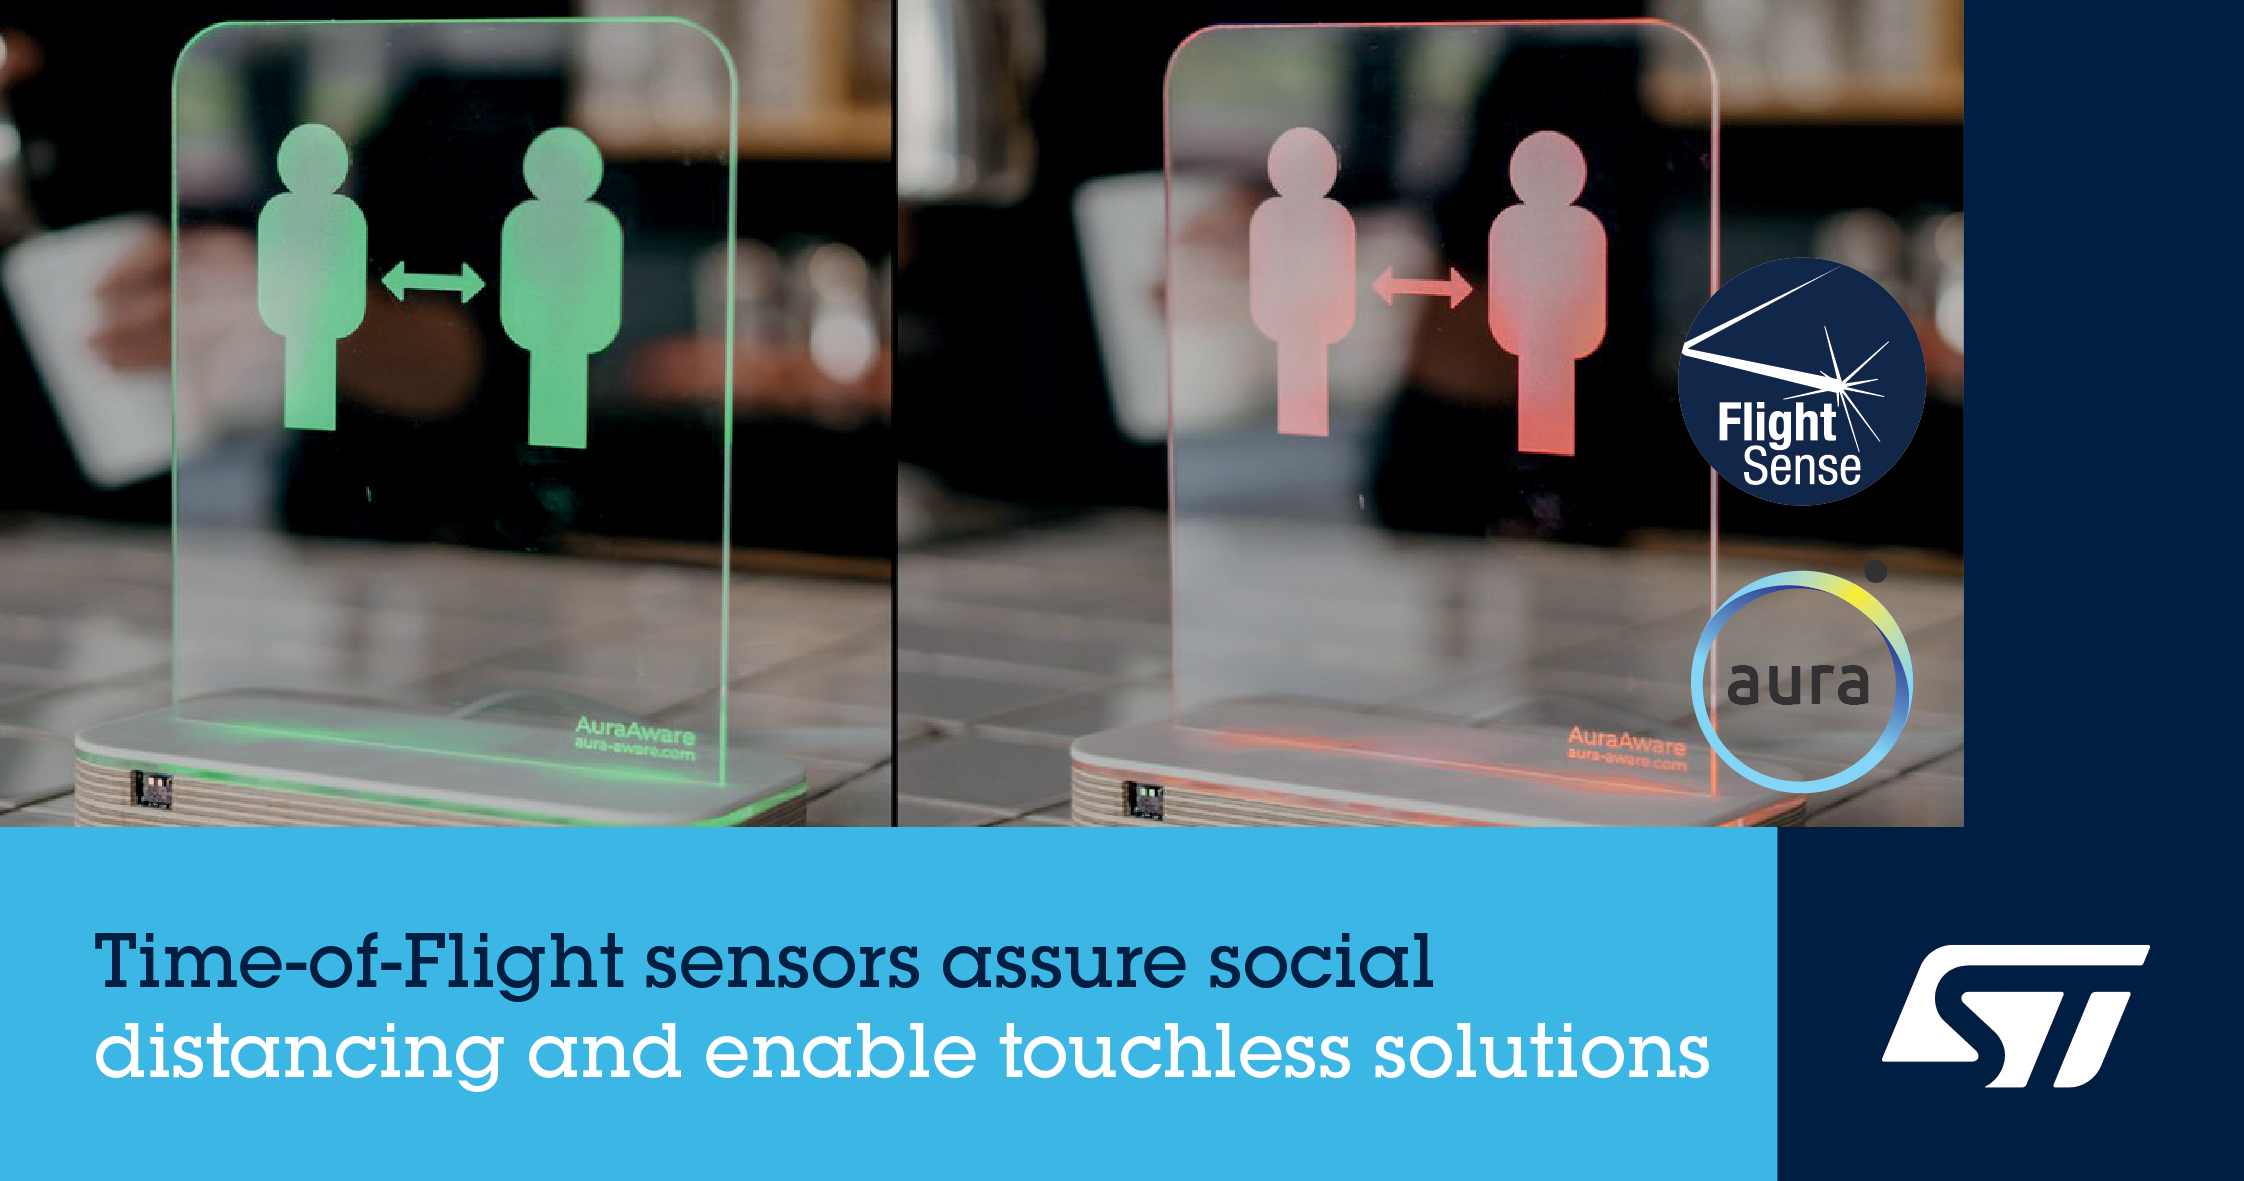 意法半导体FlightSense™飞行时间接近及检测传感器 助力社交距离感知应用创新